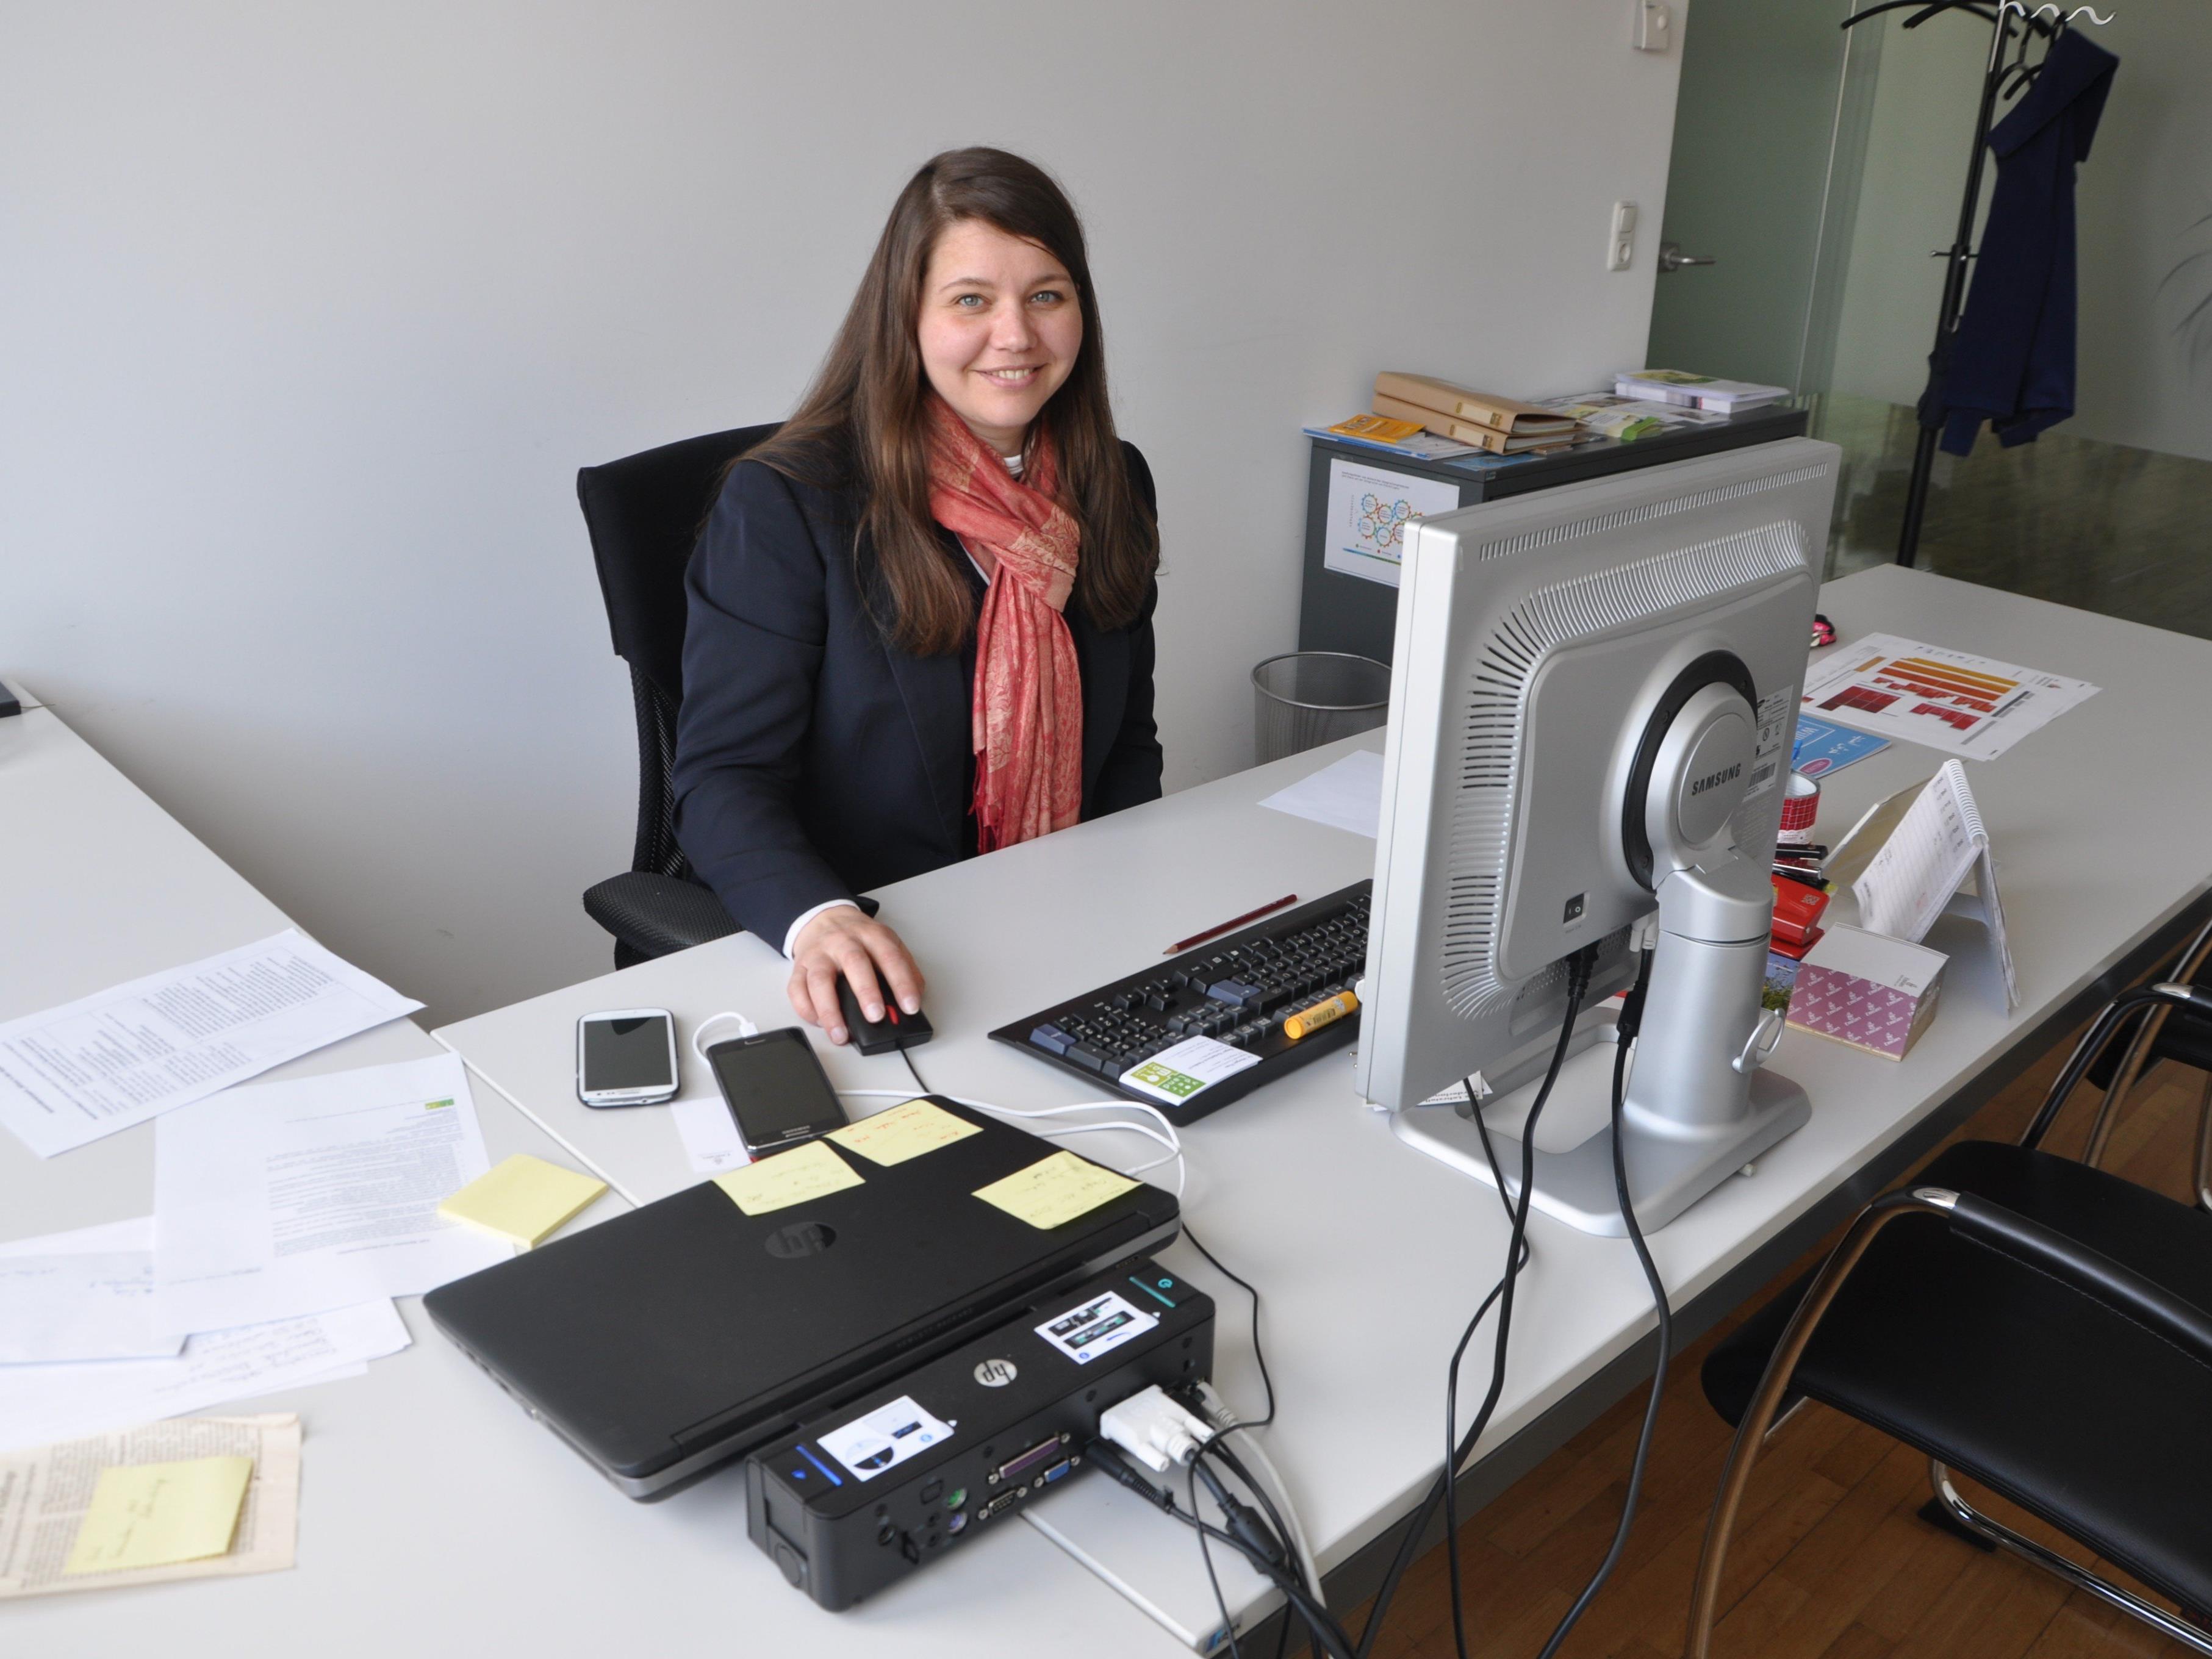 Margot Pires ist die neue Leiterin der Koordinationsstelle für Integration in der Regio Vorderland-Feldkirch.